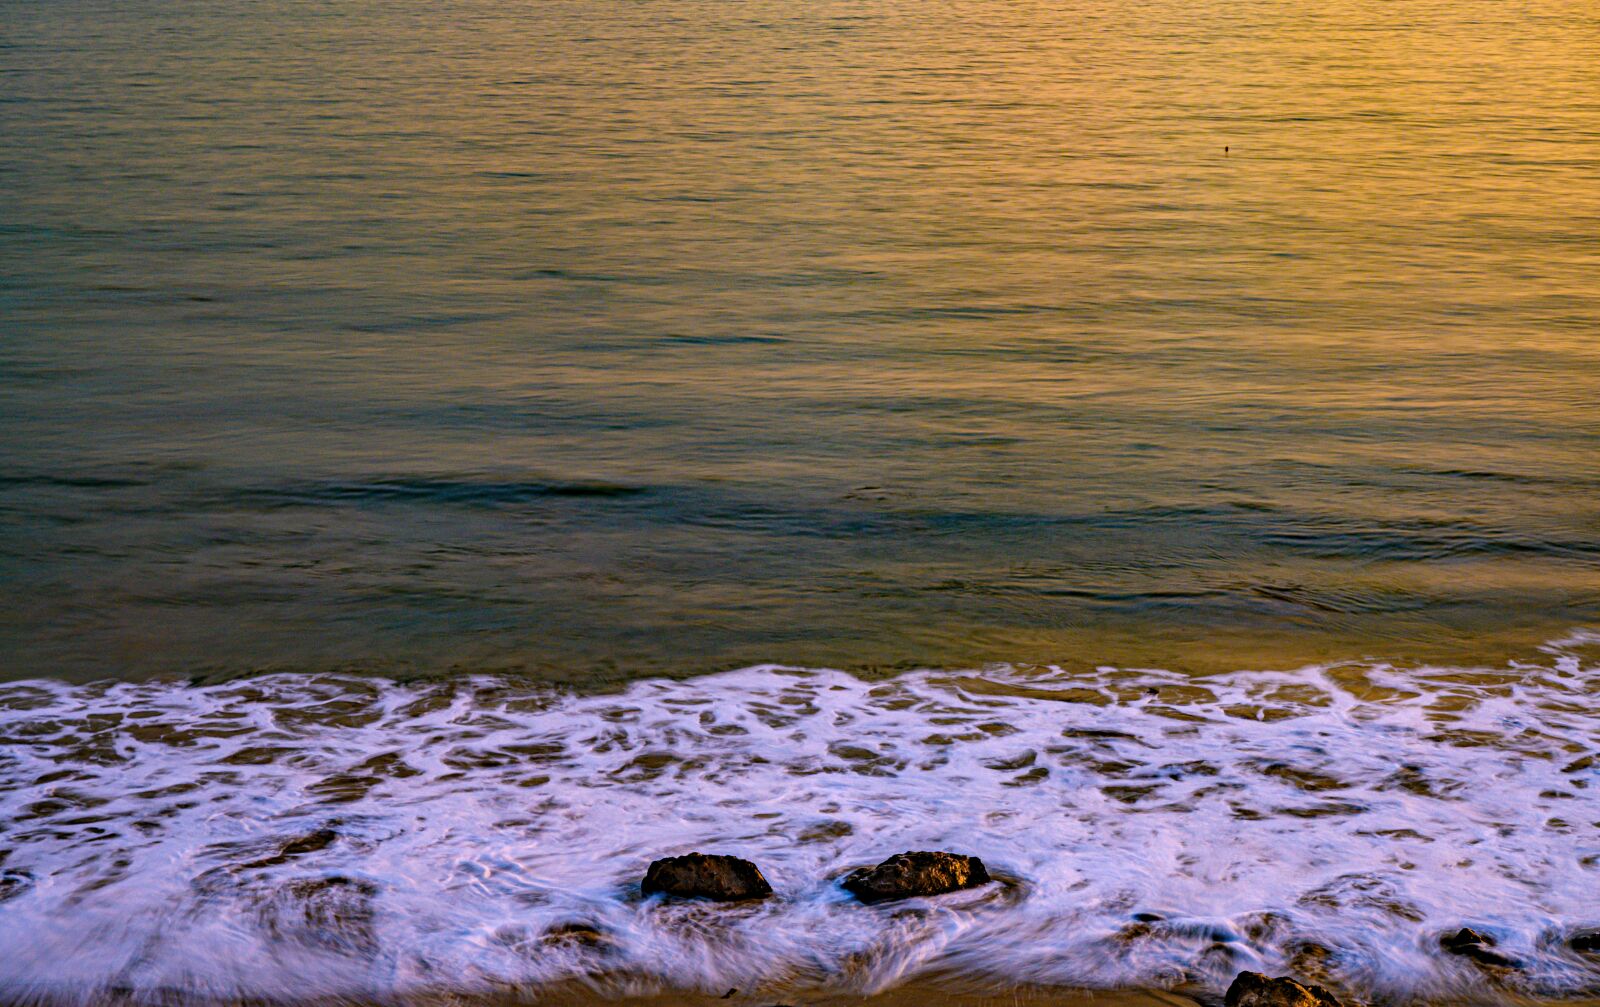 Nikon Z7 + Nikon Nikkor Z 24-70mm F4 S sample photo. Beach, rocks, ocean photography